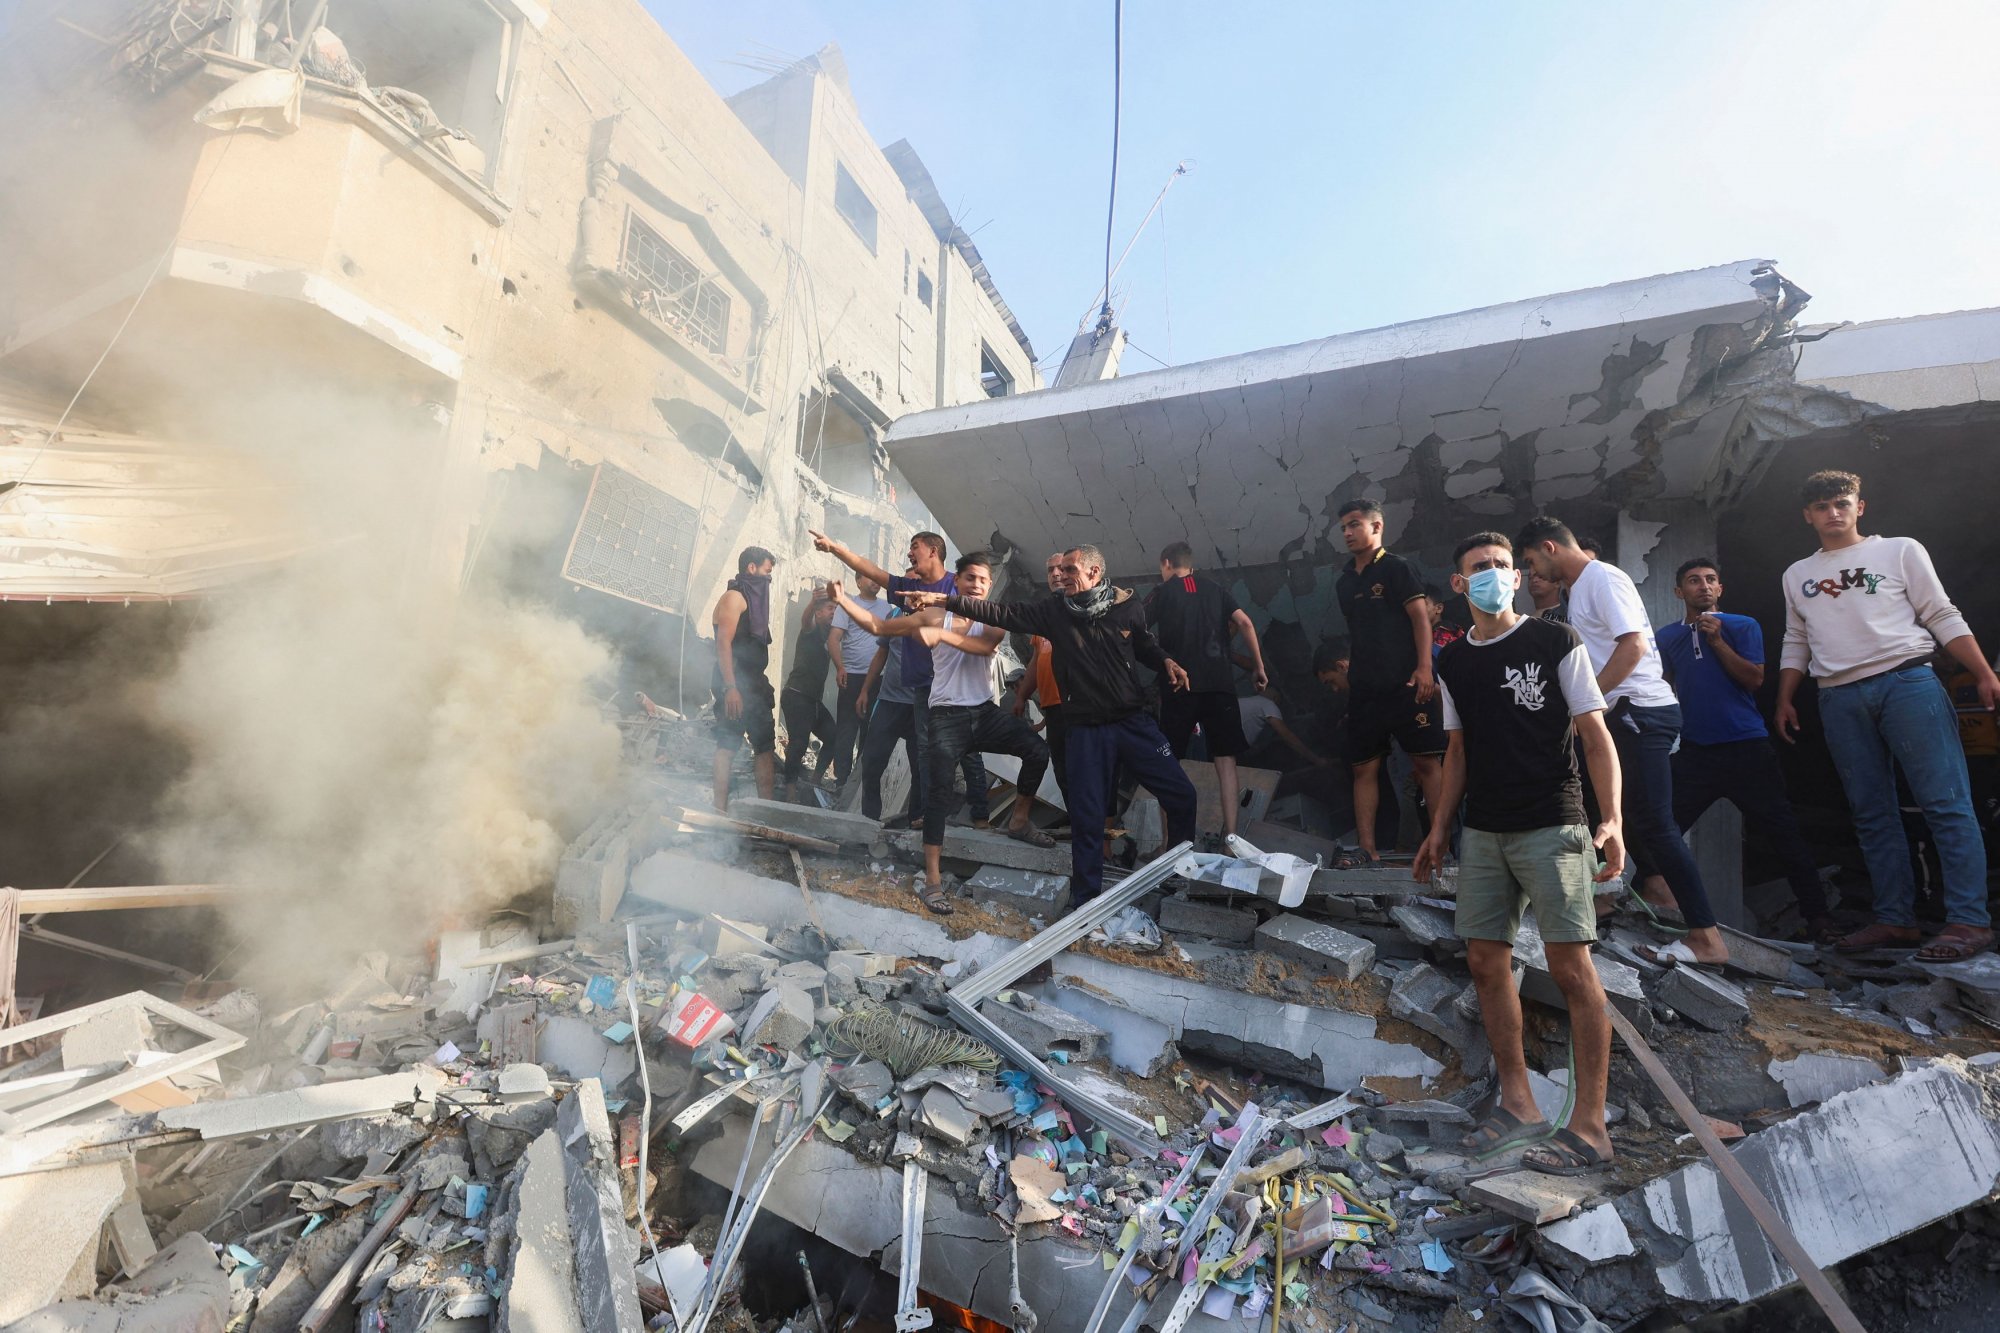 Γάζα: «Είδαμε τον θάνατο με τα μάτια μας» - Ανατριχιάζει η περιγραφή οικογένειας που θάφτηκε από χαλάσματα